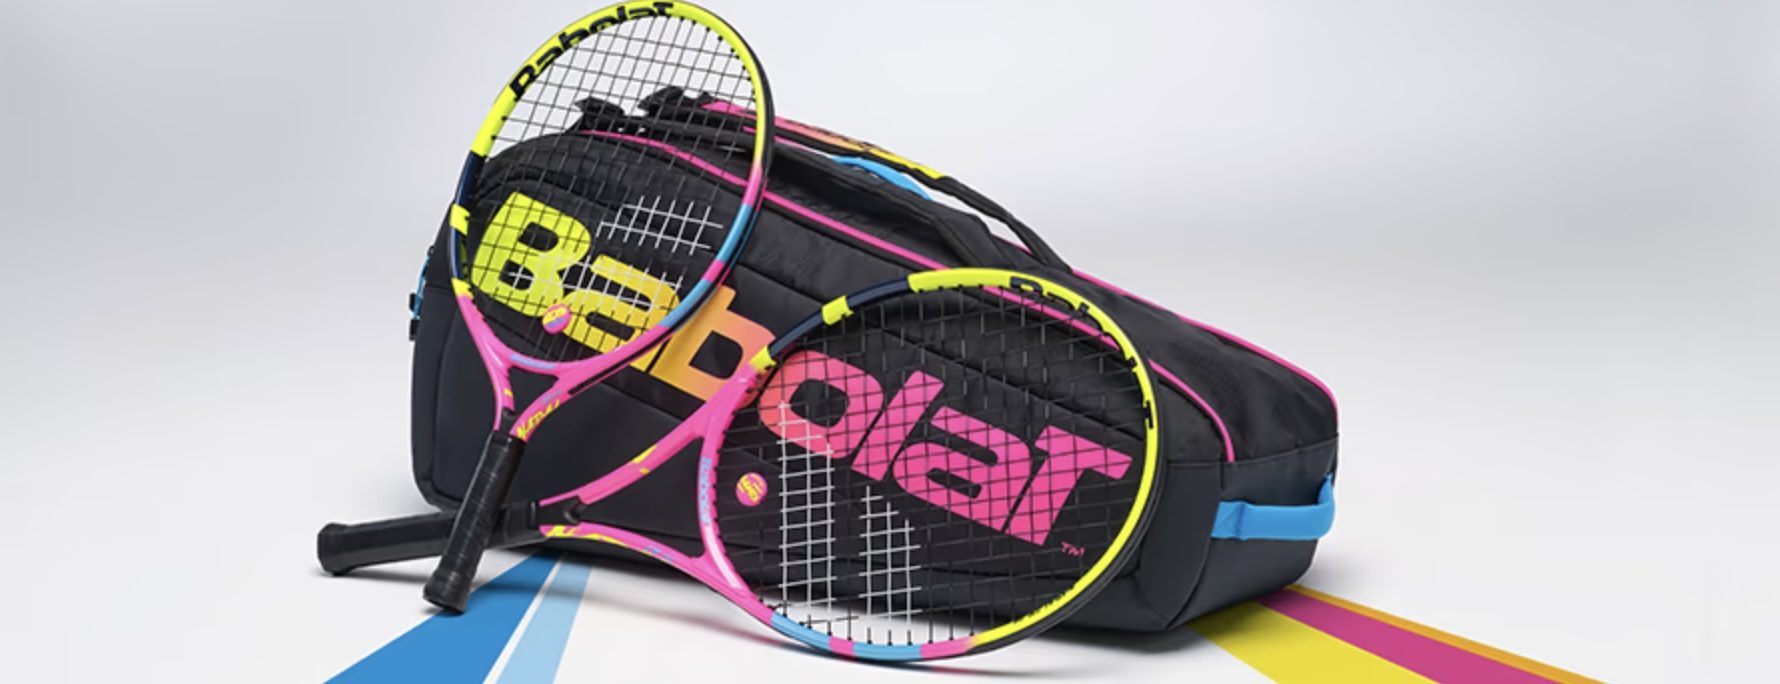 Maleta de tenis marca Babolat y raquetas de tenis Babolat